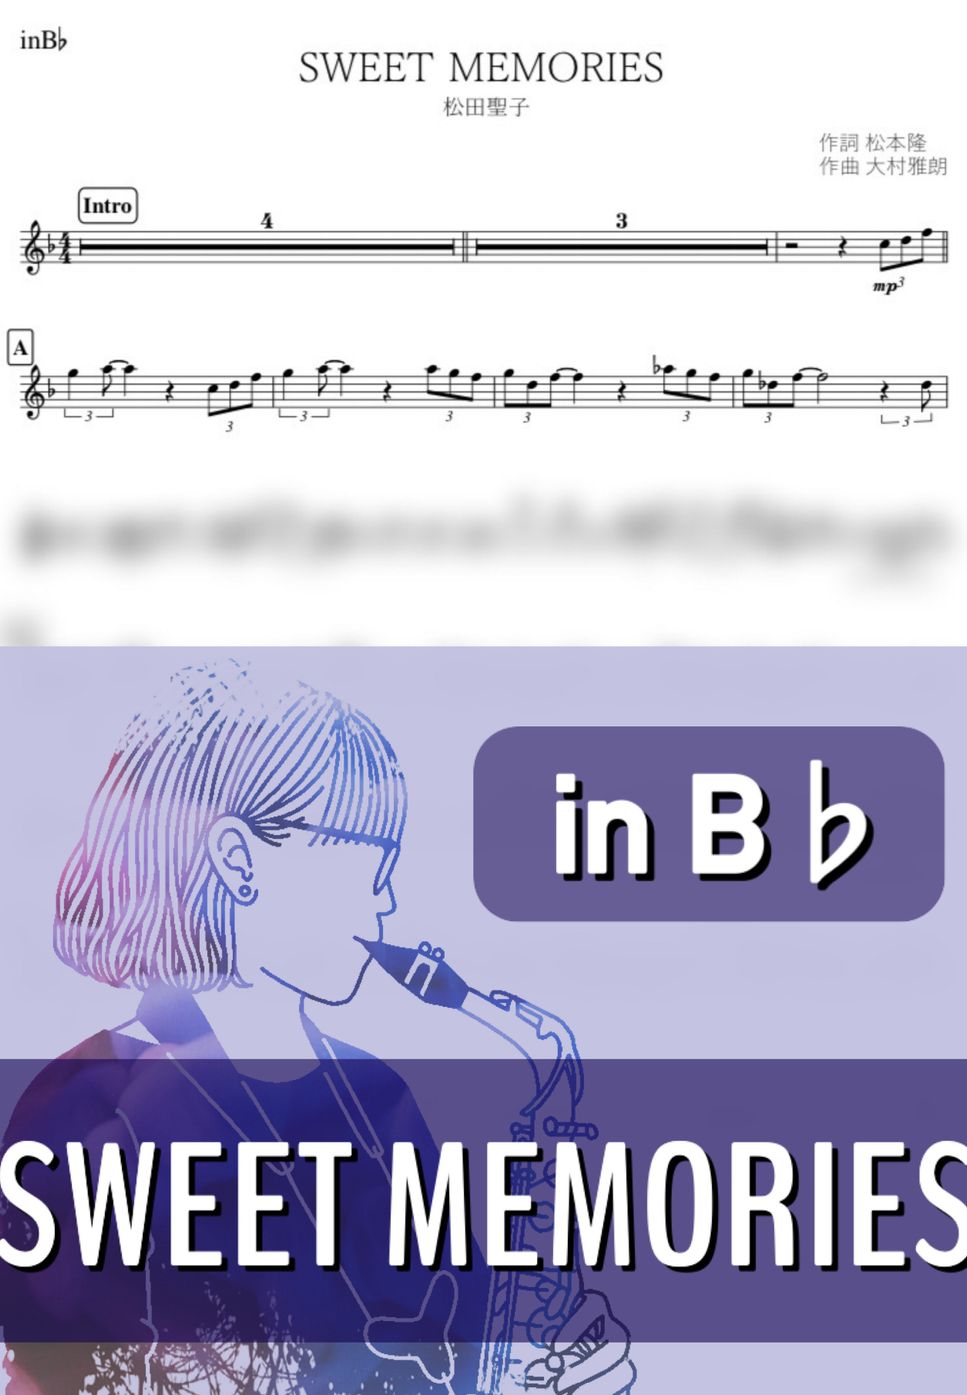 松田聖子 - SWEET MEMORIES (B♭) by kanamusic